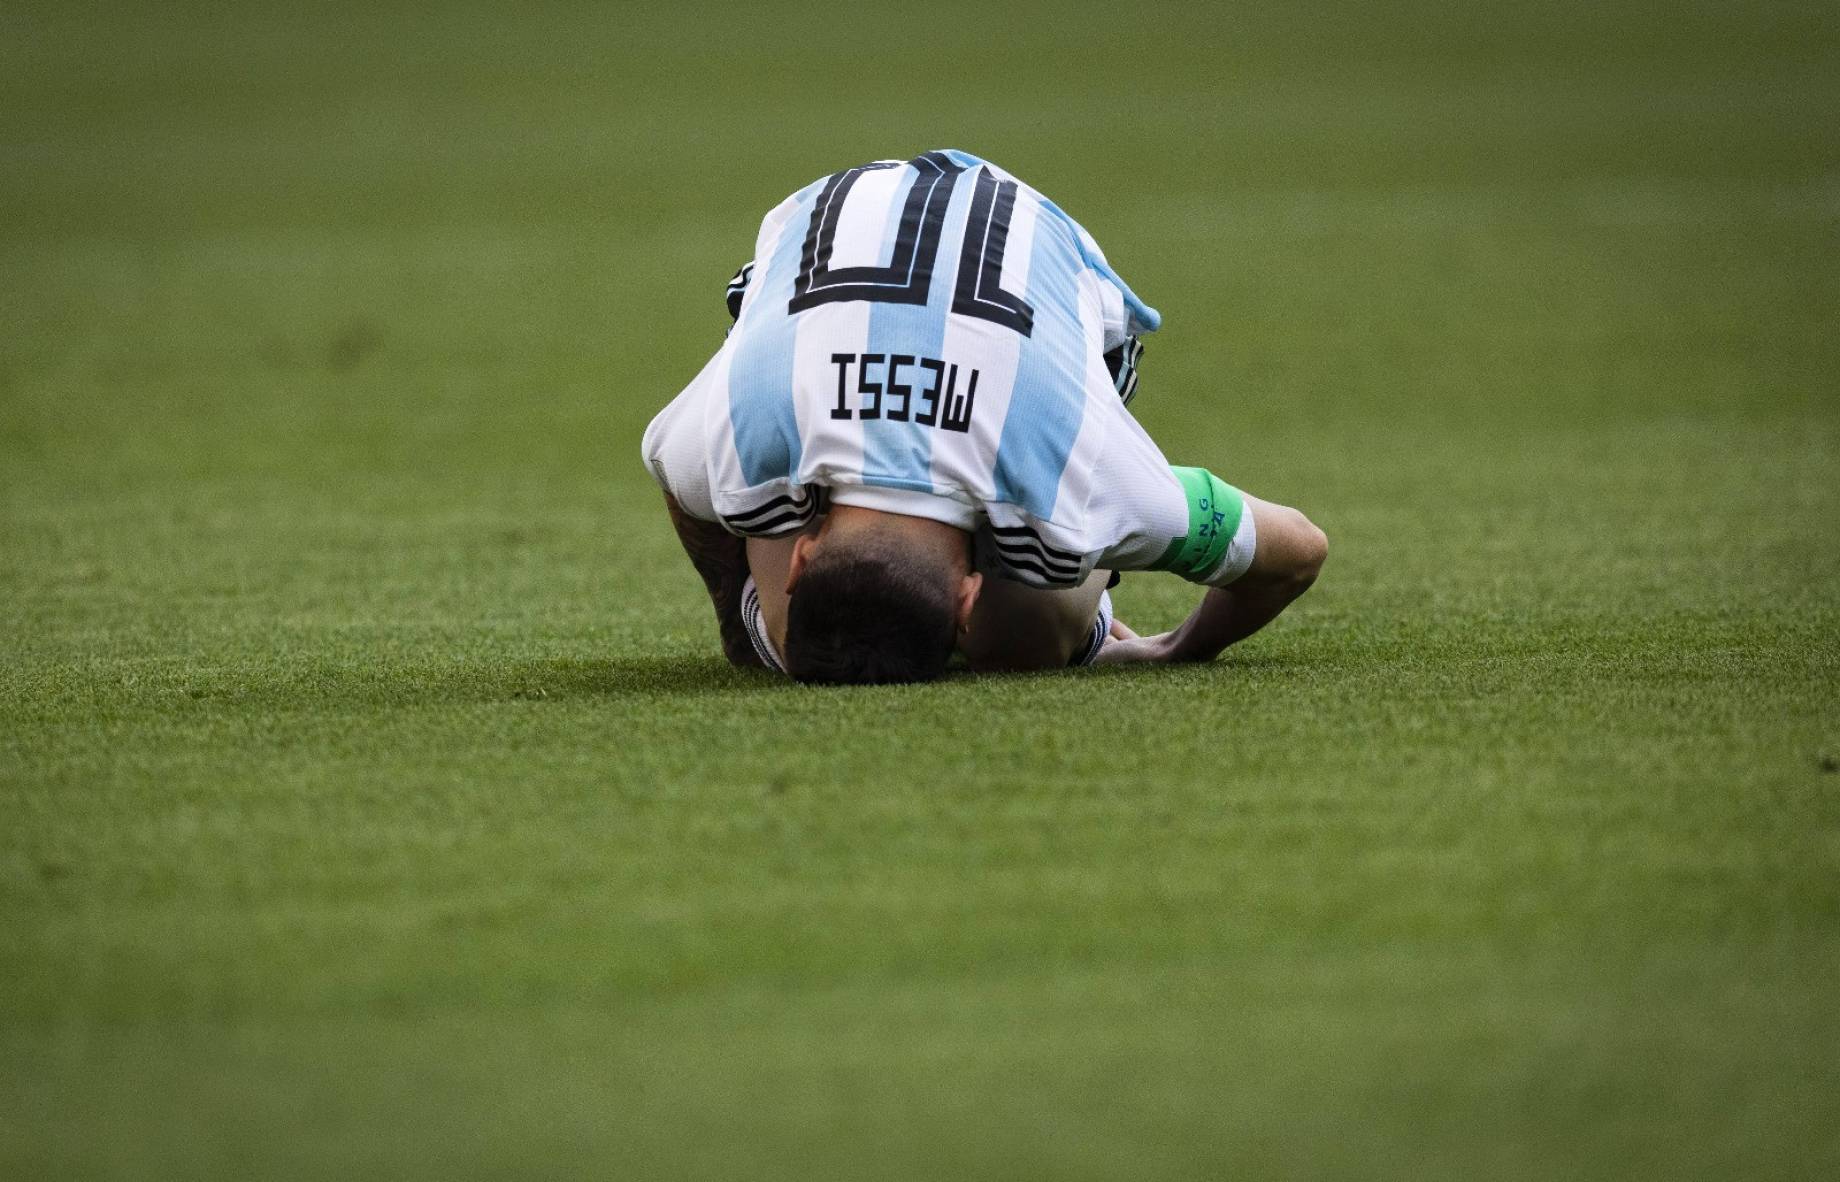 Argentina Messi.jpg